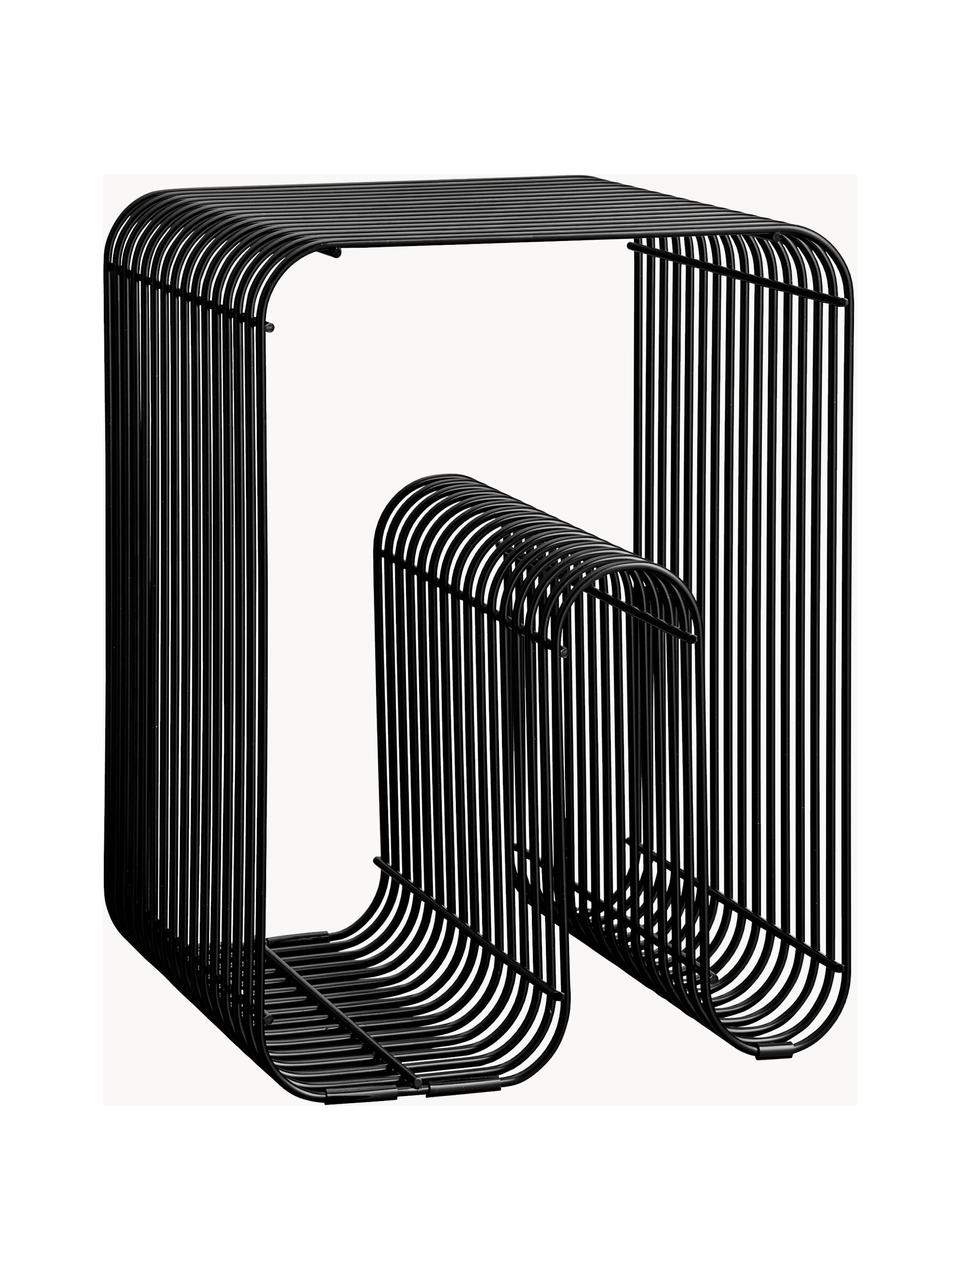 Stolik pomocniczy z metalu Curva, Metal powlekany, Czarny, S 32 x W 43 cm